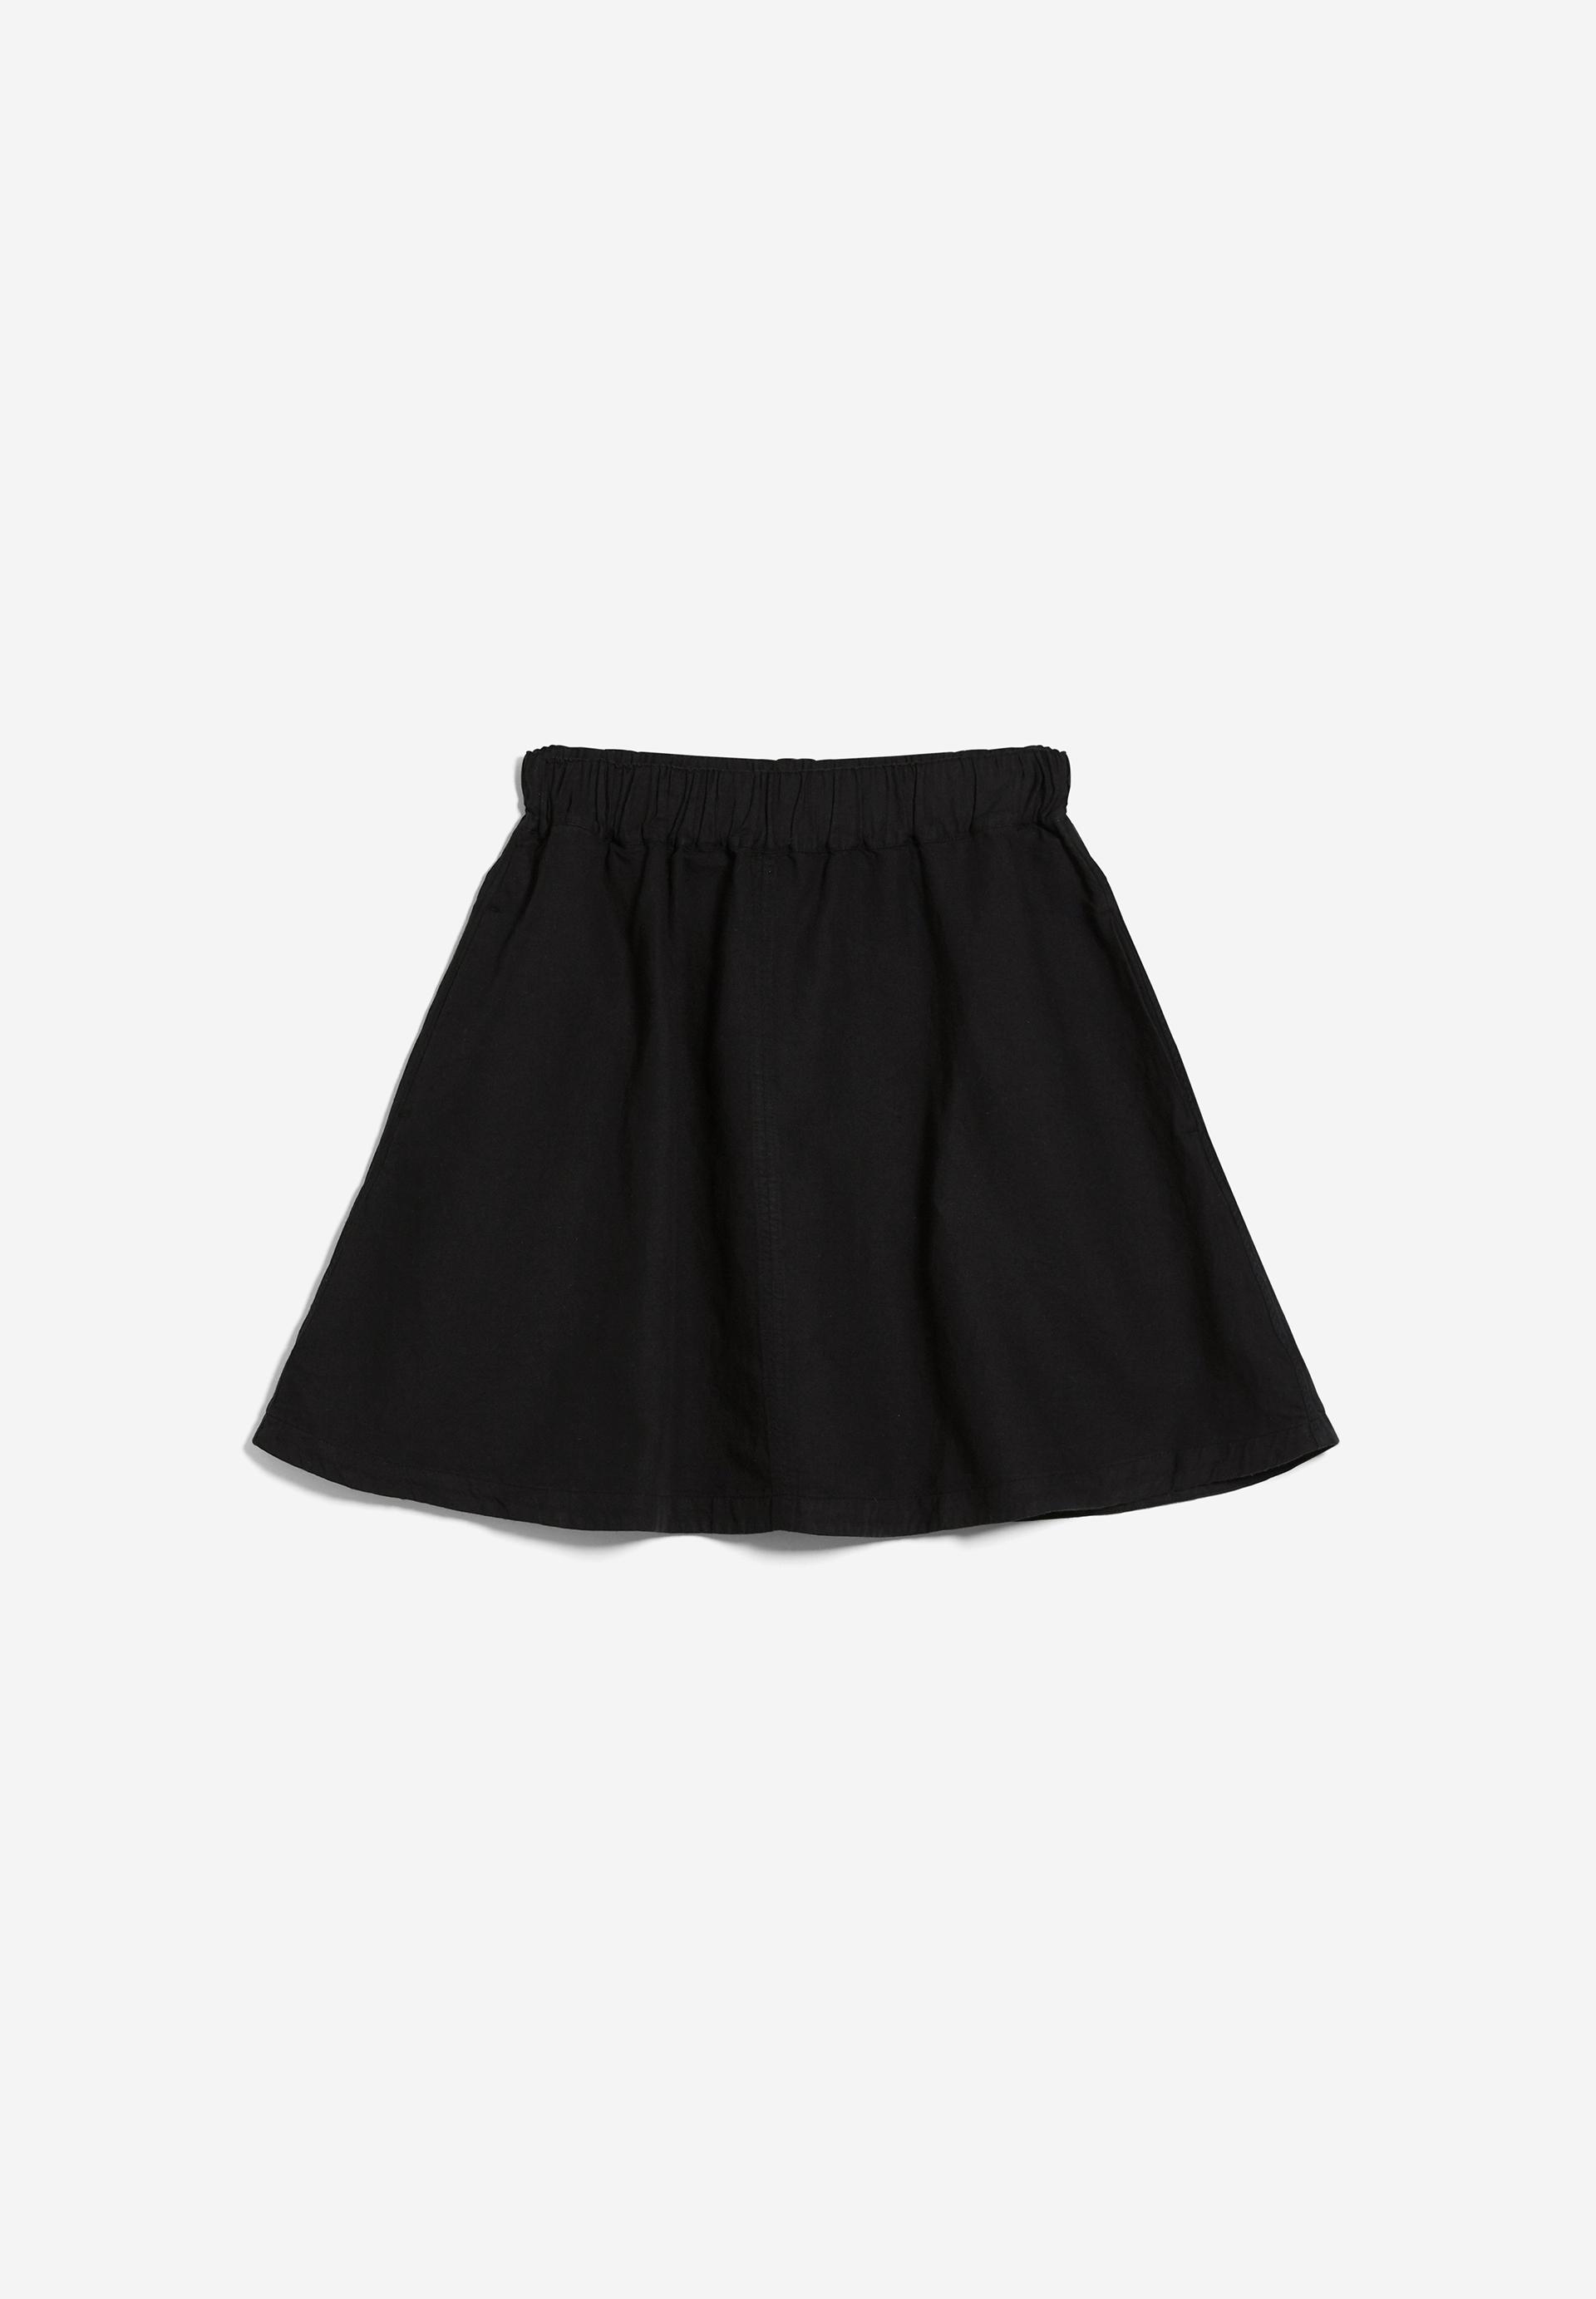 KESIAA LINO Woven Skirt Regular Fit made of Linen-Mix